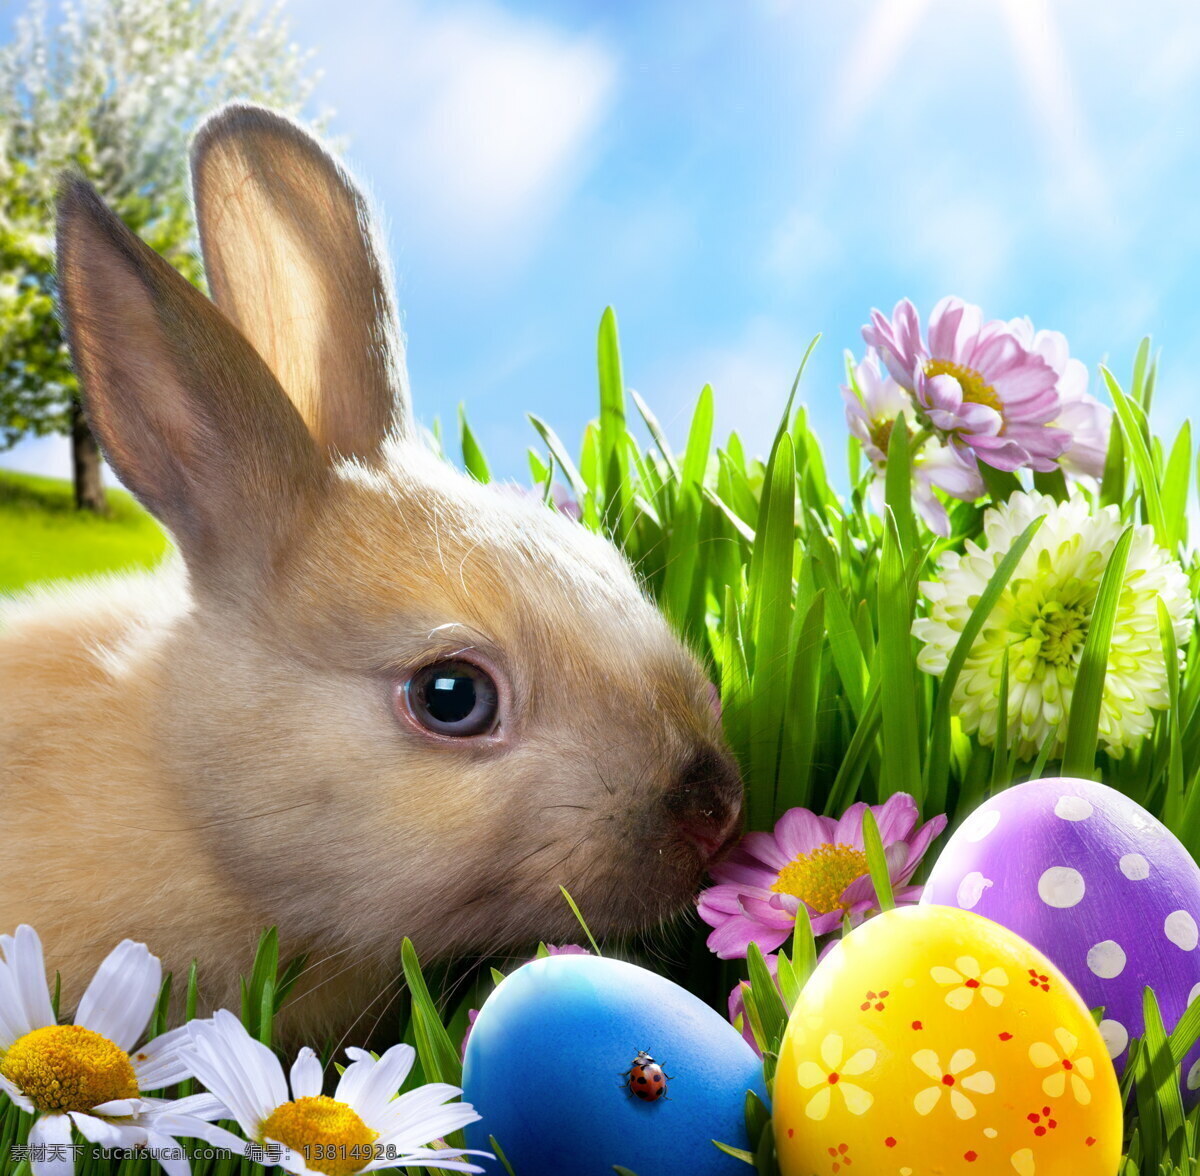 蓝天 白云 草原 草地 唯美 鸡蛋 篮子 彩蛋 小花 复活节 兔子 文化艺术 节日庆祝